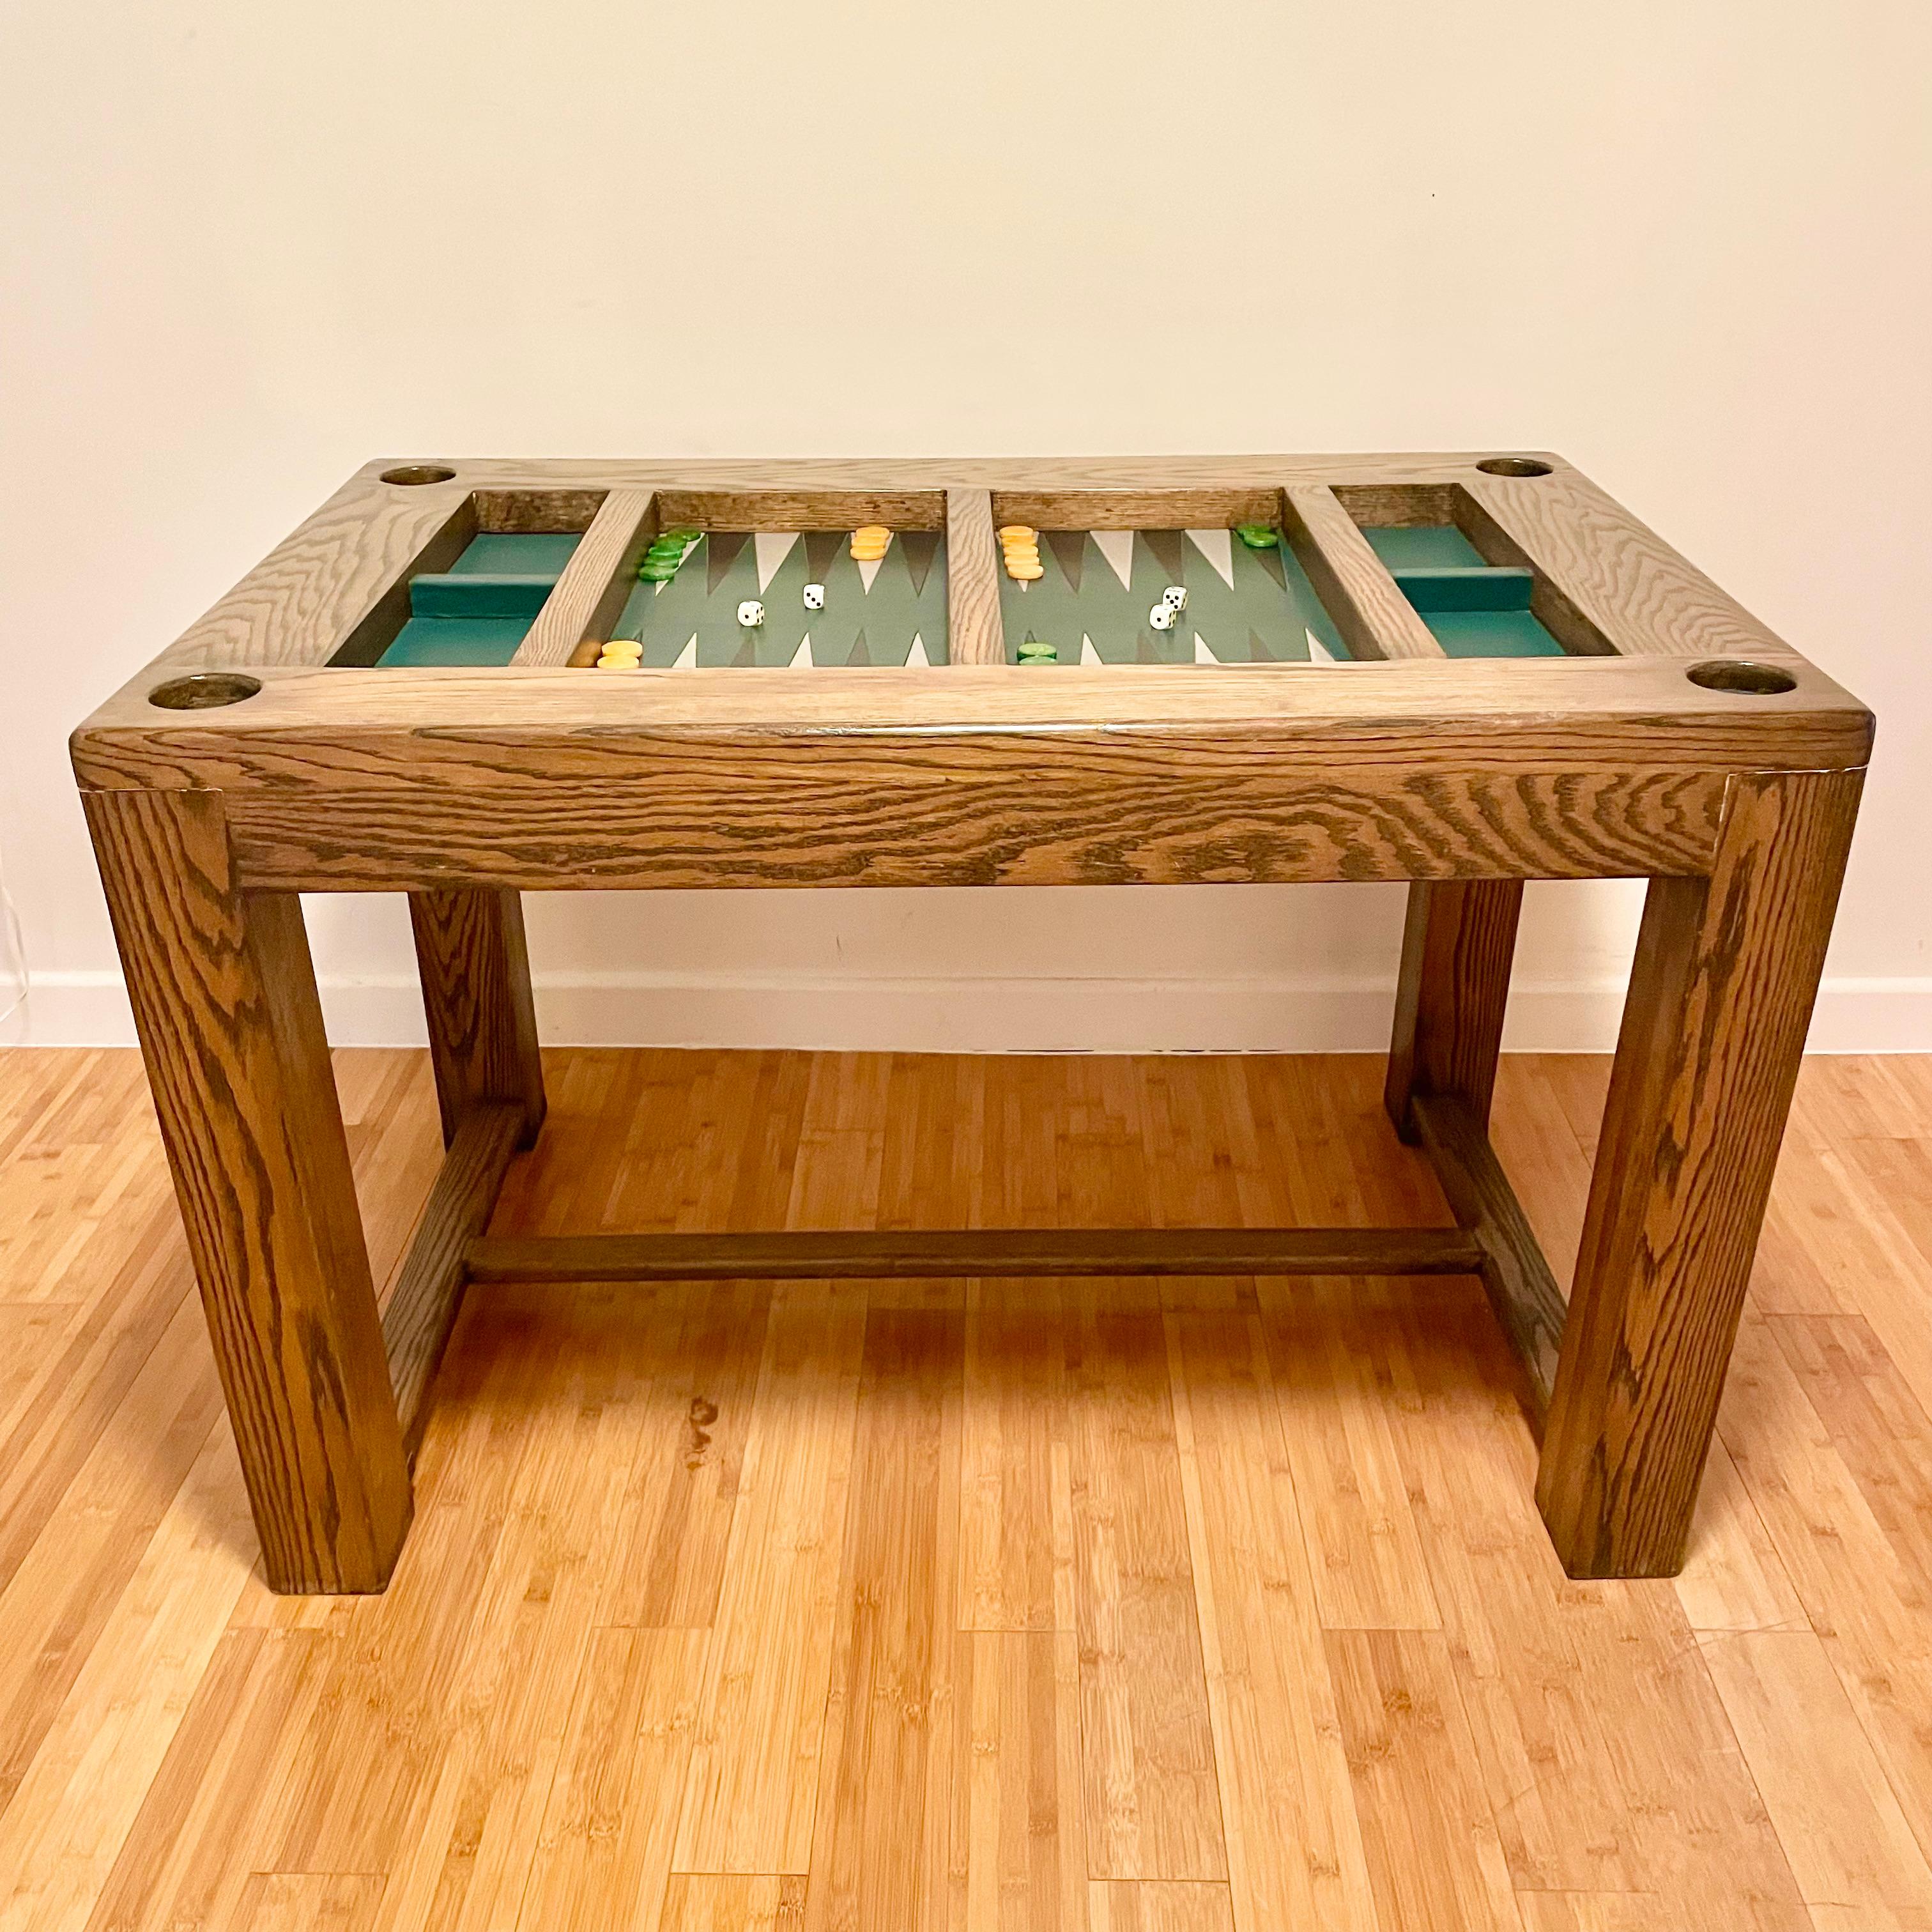 Table de backgammon classique en chêne et cuir. La surface de jeu est un cuir vert riche avec des triangles de cuir noirs et blancs alternés. Un jeu de couleurs et une présence étonnants. Il est également livré avec des gobelets en cuir pour les